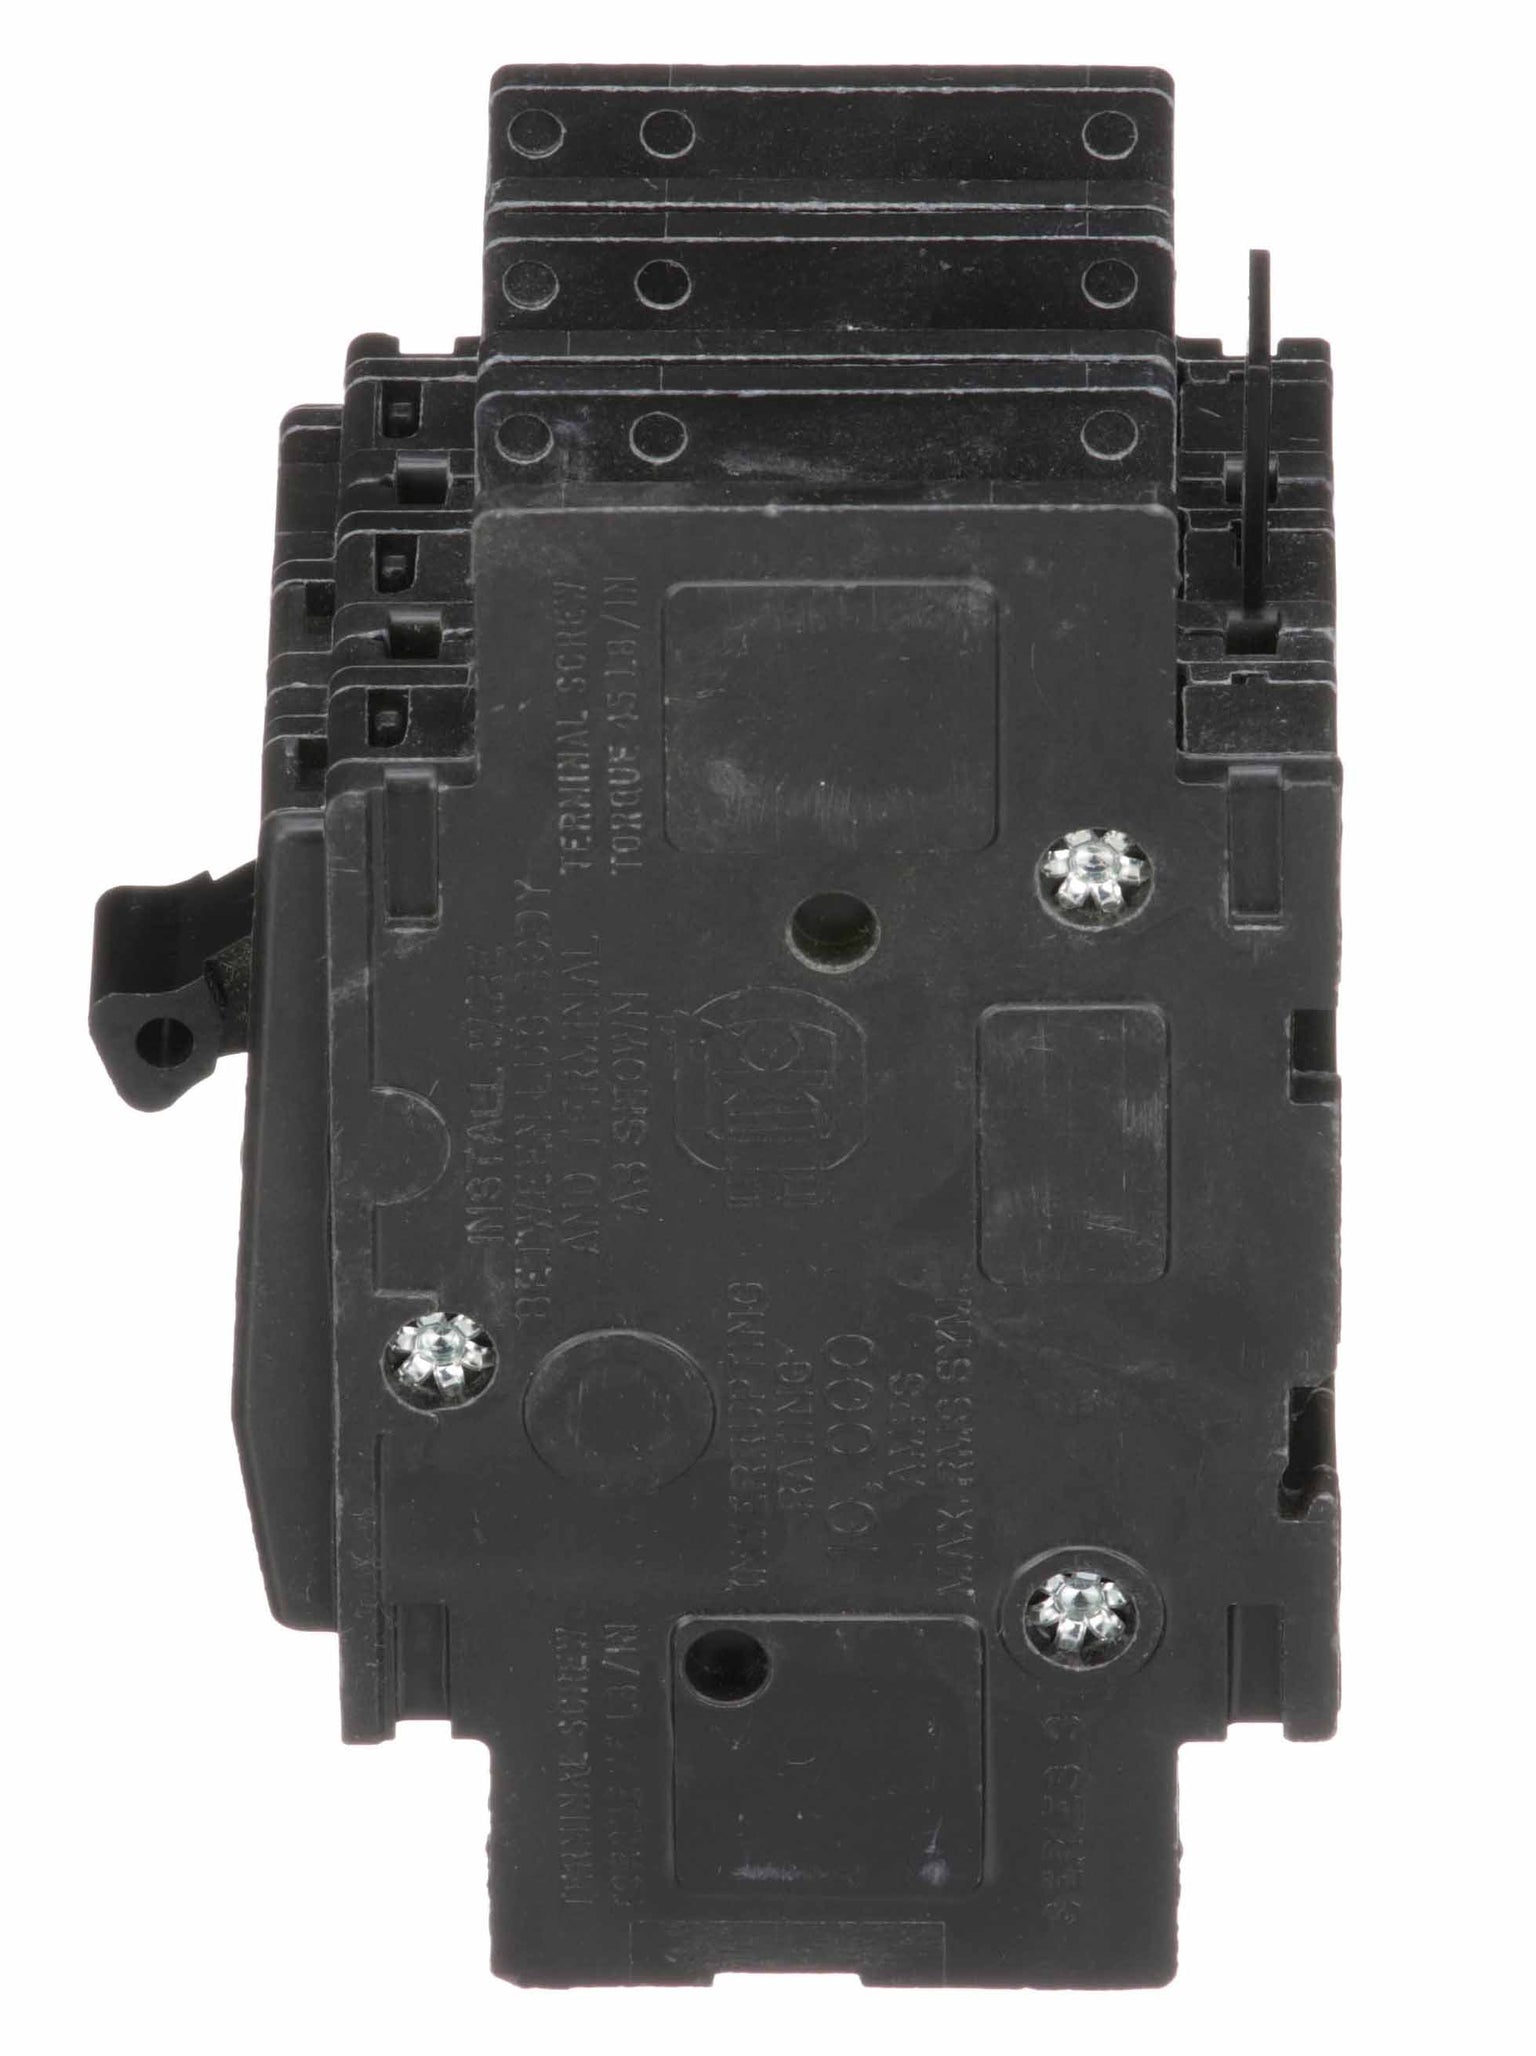 QOU335 - Square D - 35 Amp Circuit Breaker